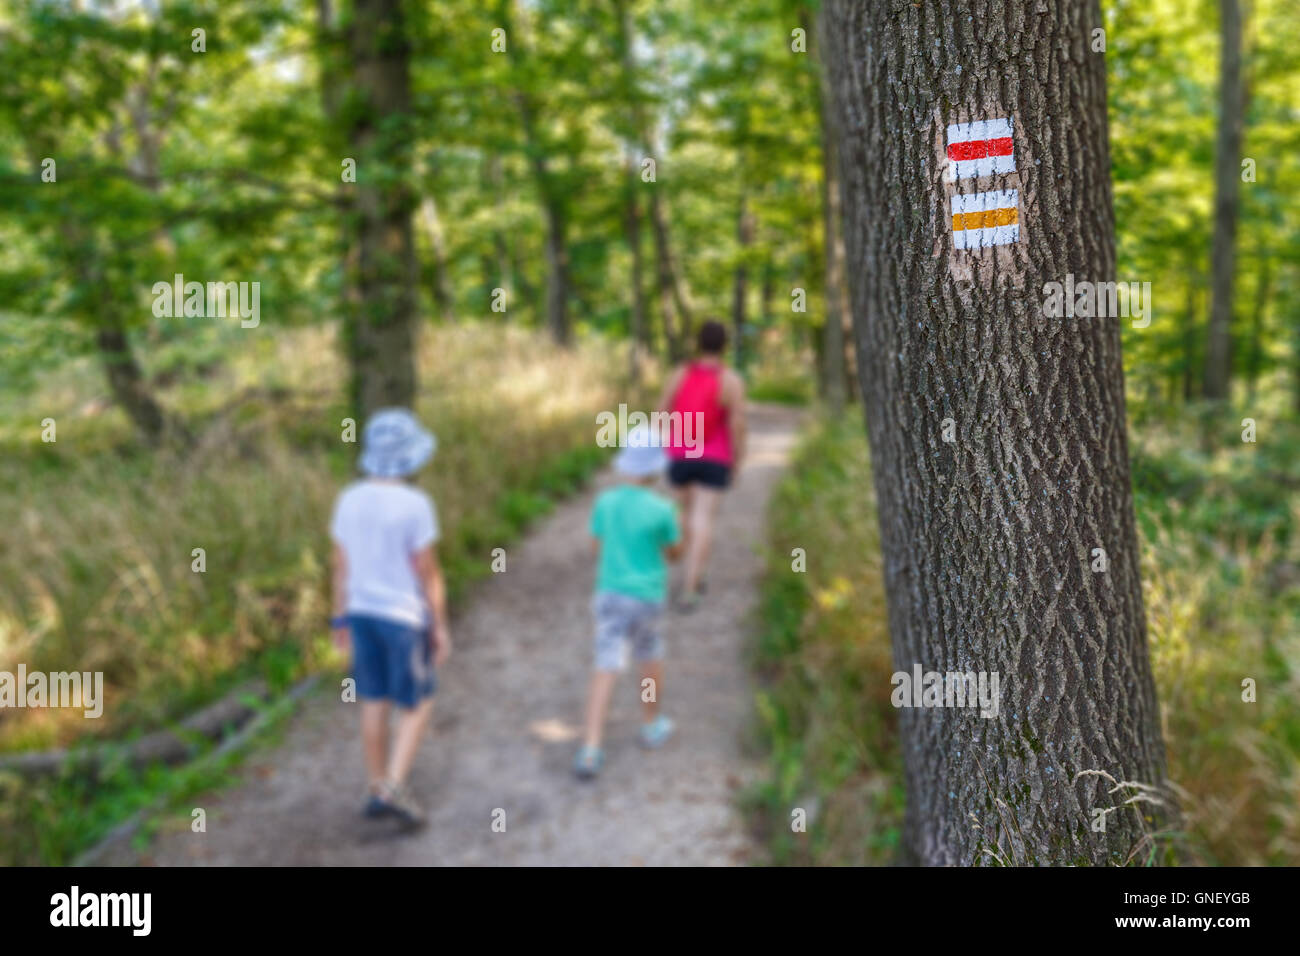 Touristischen Schild am Baum, weibliche und Kinder Tourist im Hintergrund Stockfoto